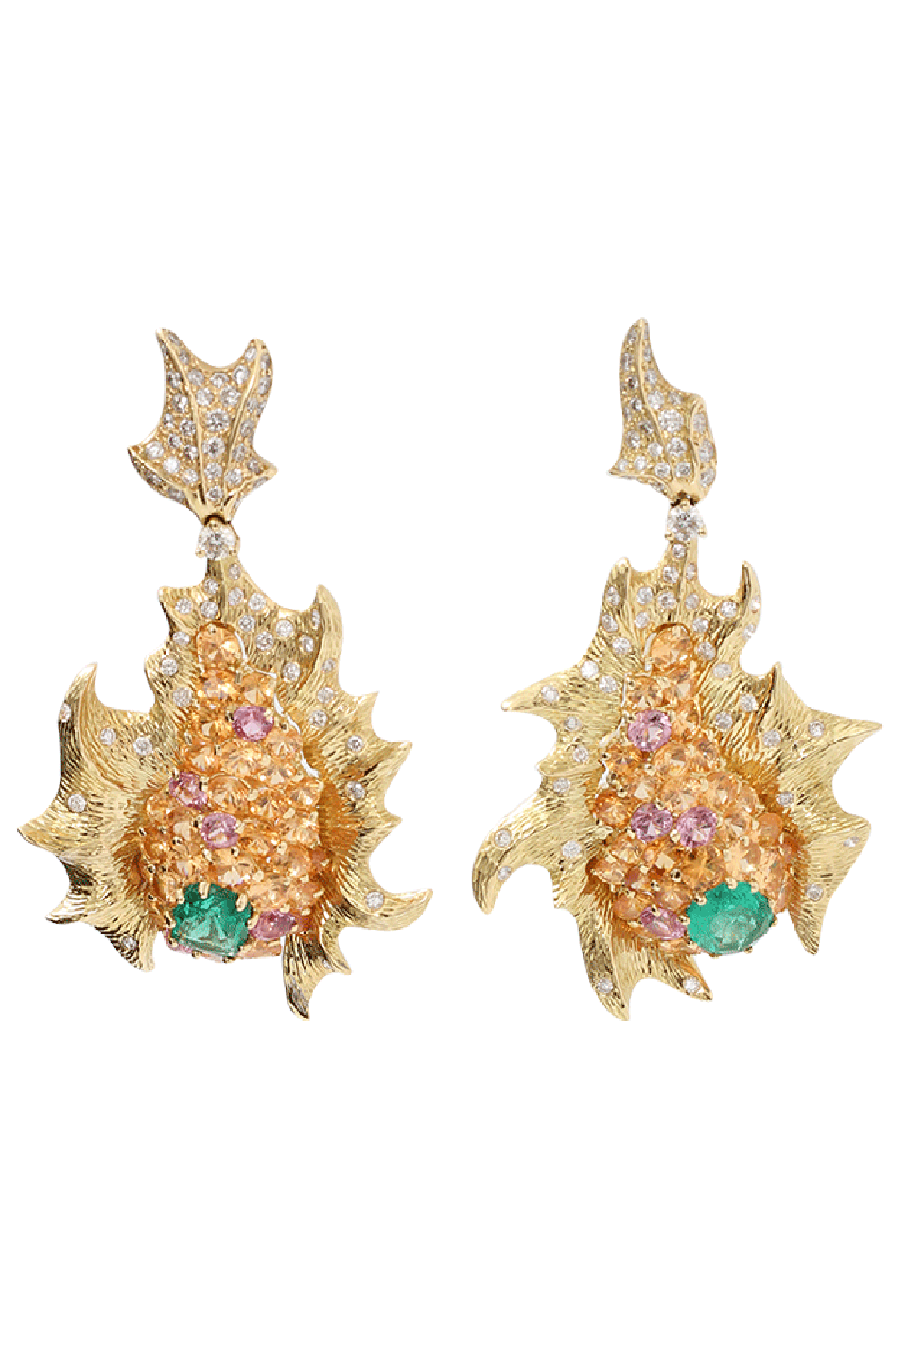 Emerald And Diamond Fish Earrings JEWELRYFINE JEWELEARRING ARUNASHI   